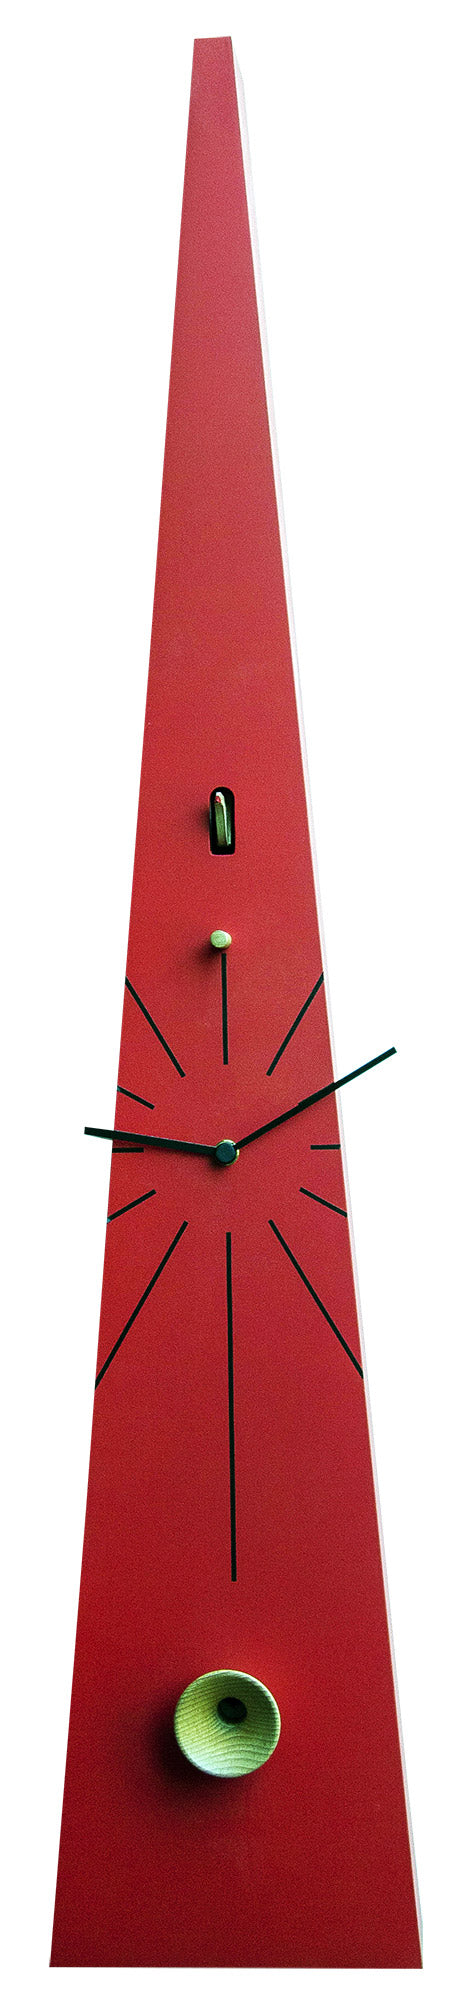 Horloge Coucou Murale 17,5x90x12 cm Pirondini Italia QQ Tall 502 Rouge acquista